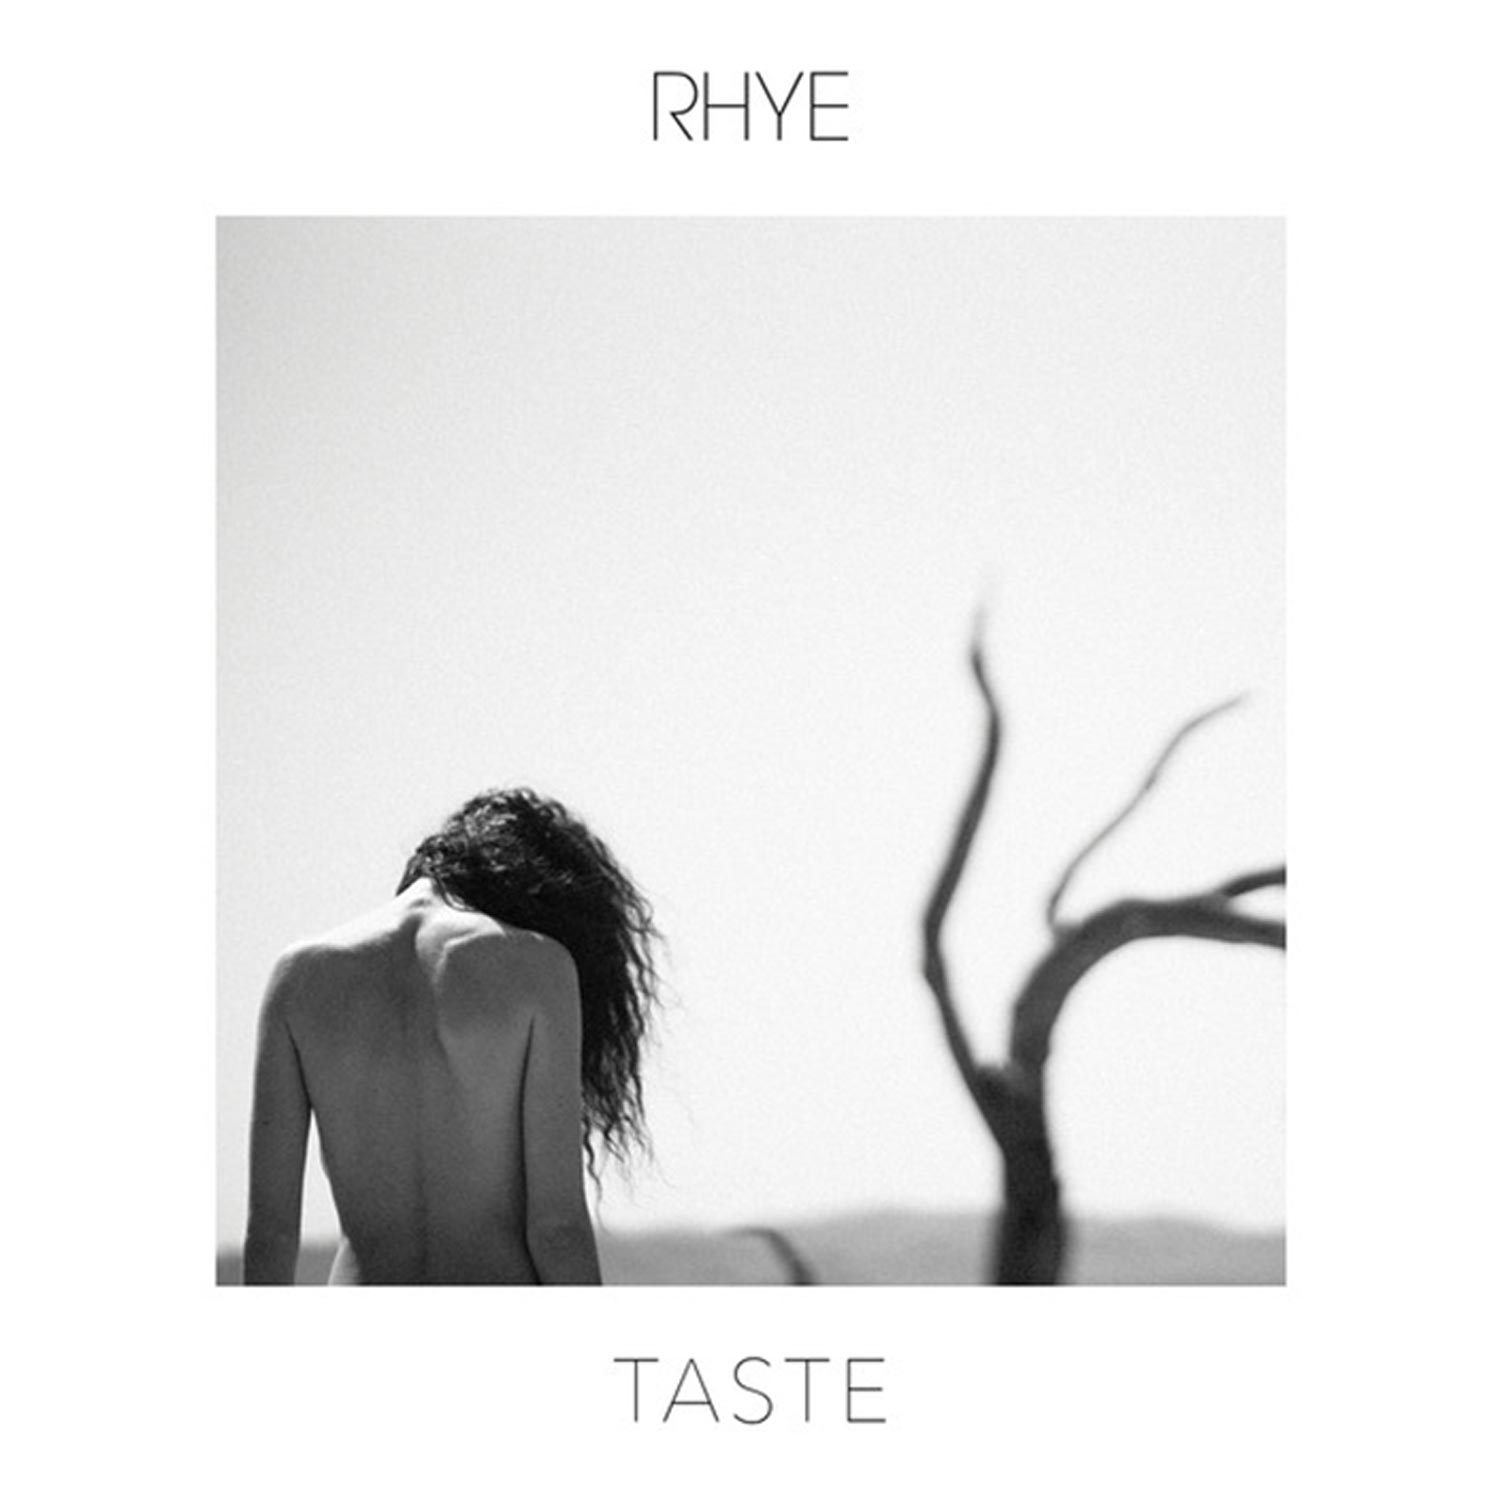 Taste by Rhye 